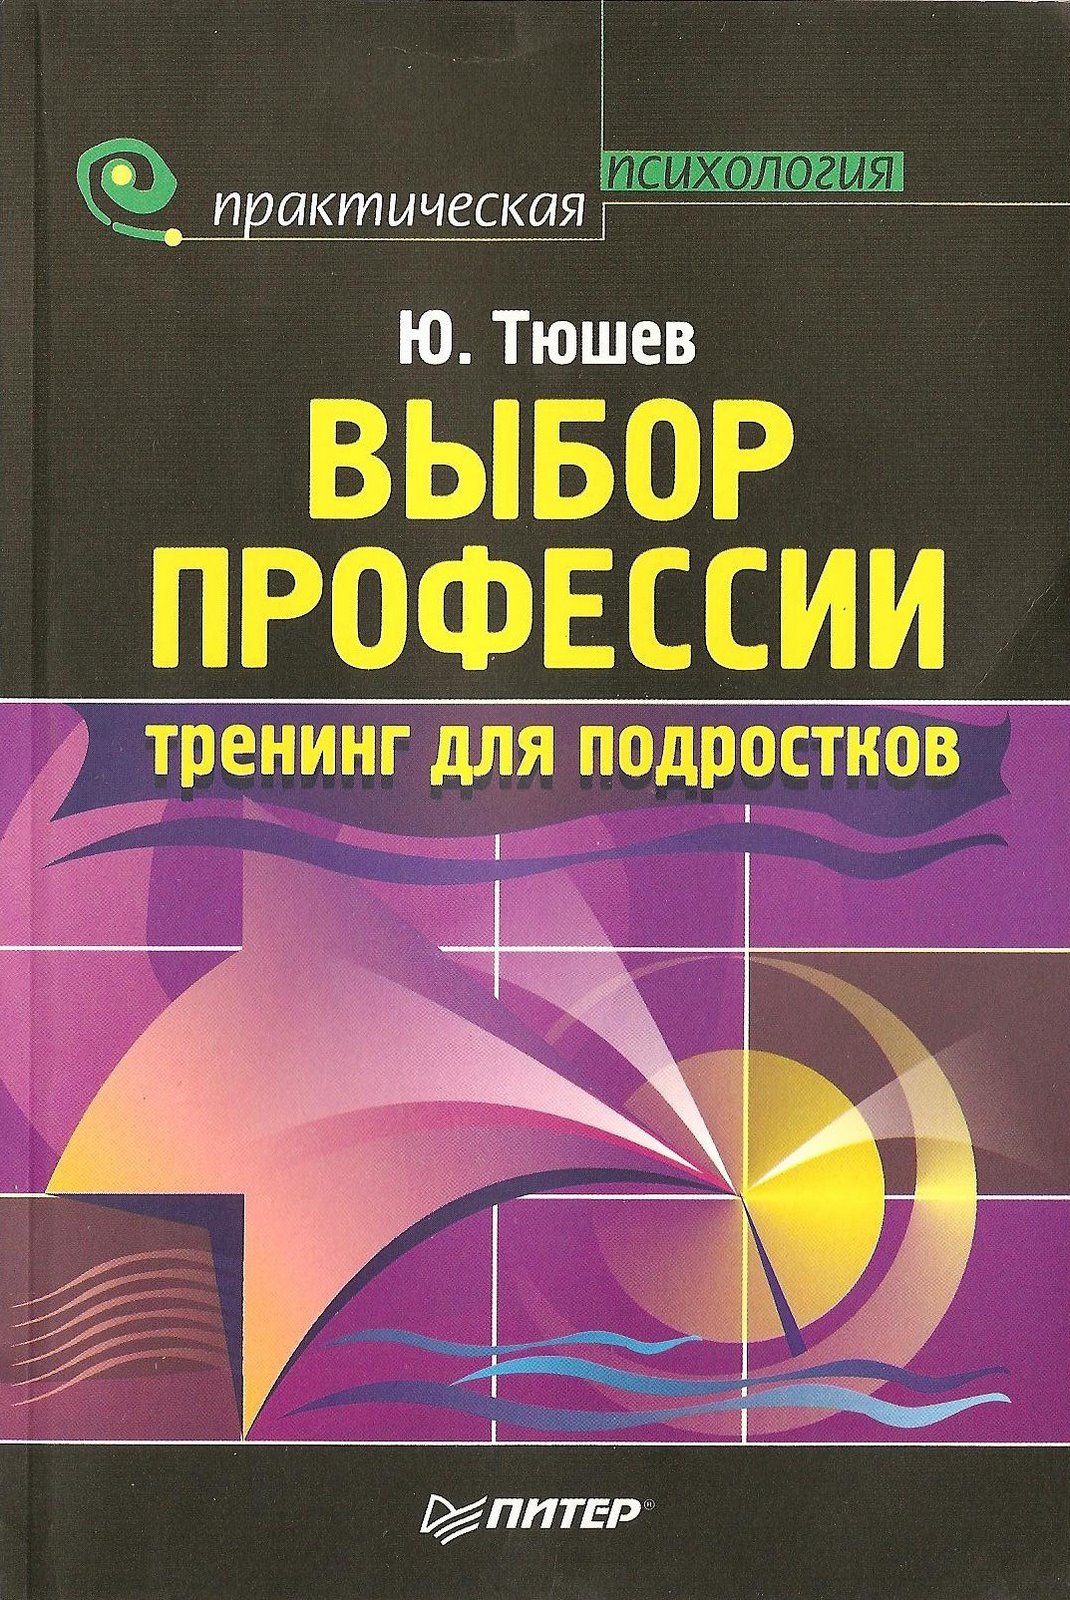 [Tushev+book+001.jpg]